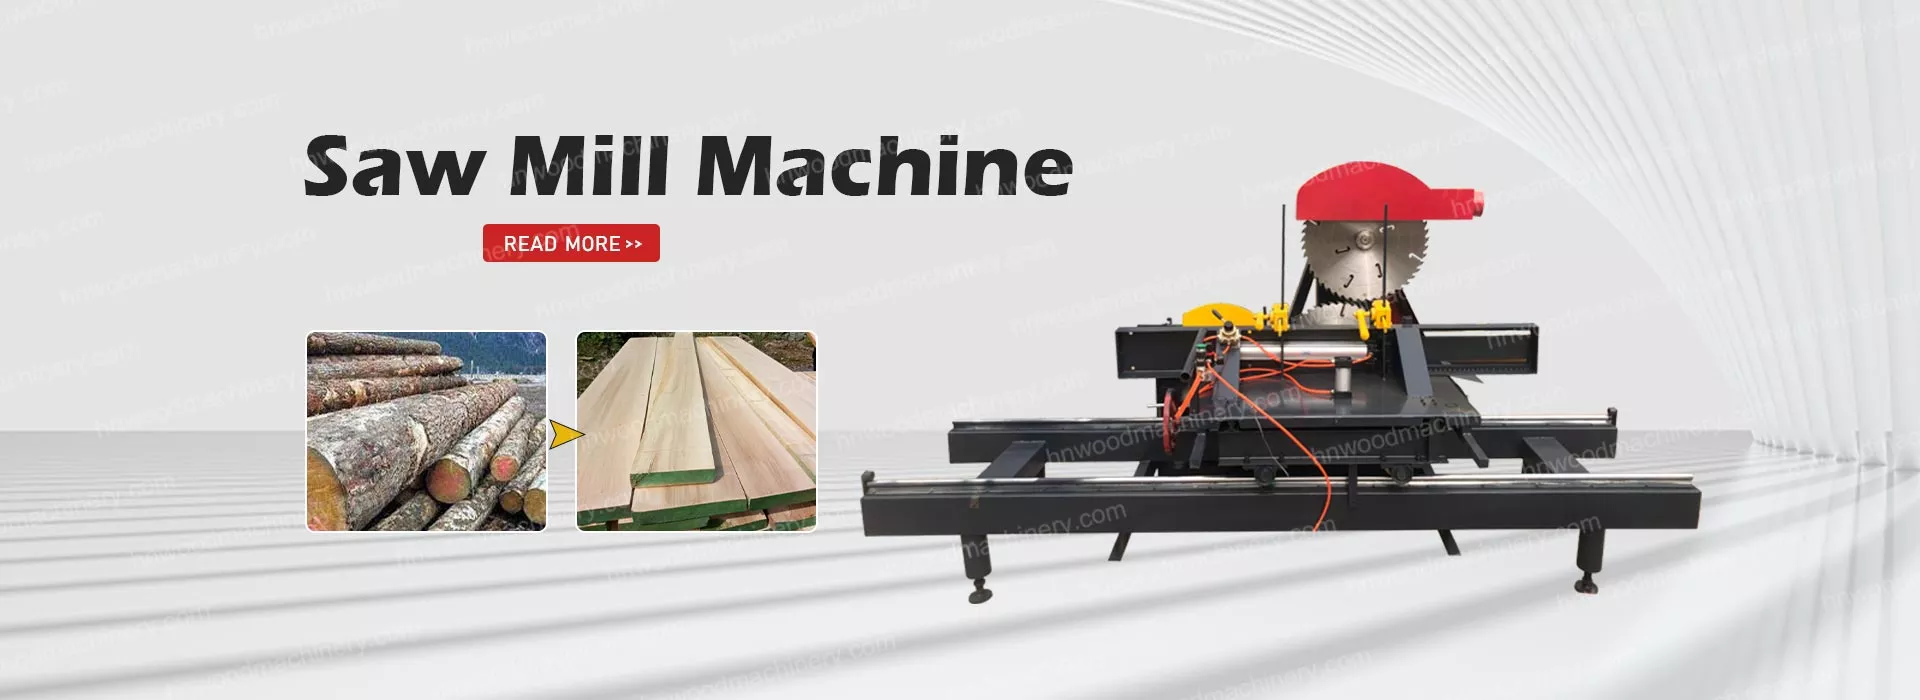 saw mill machine